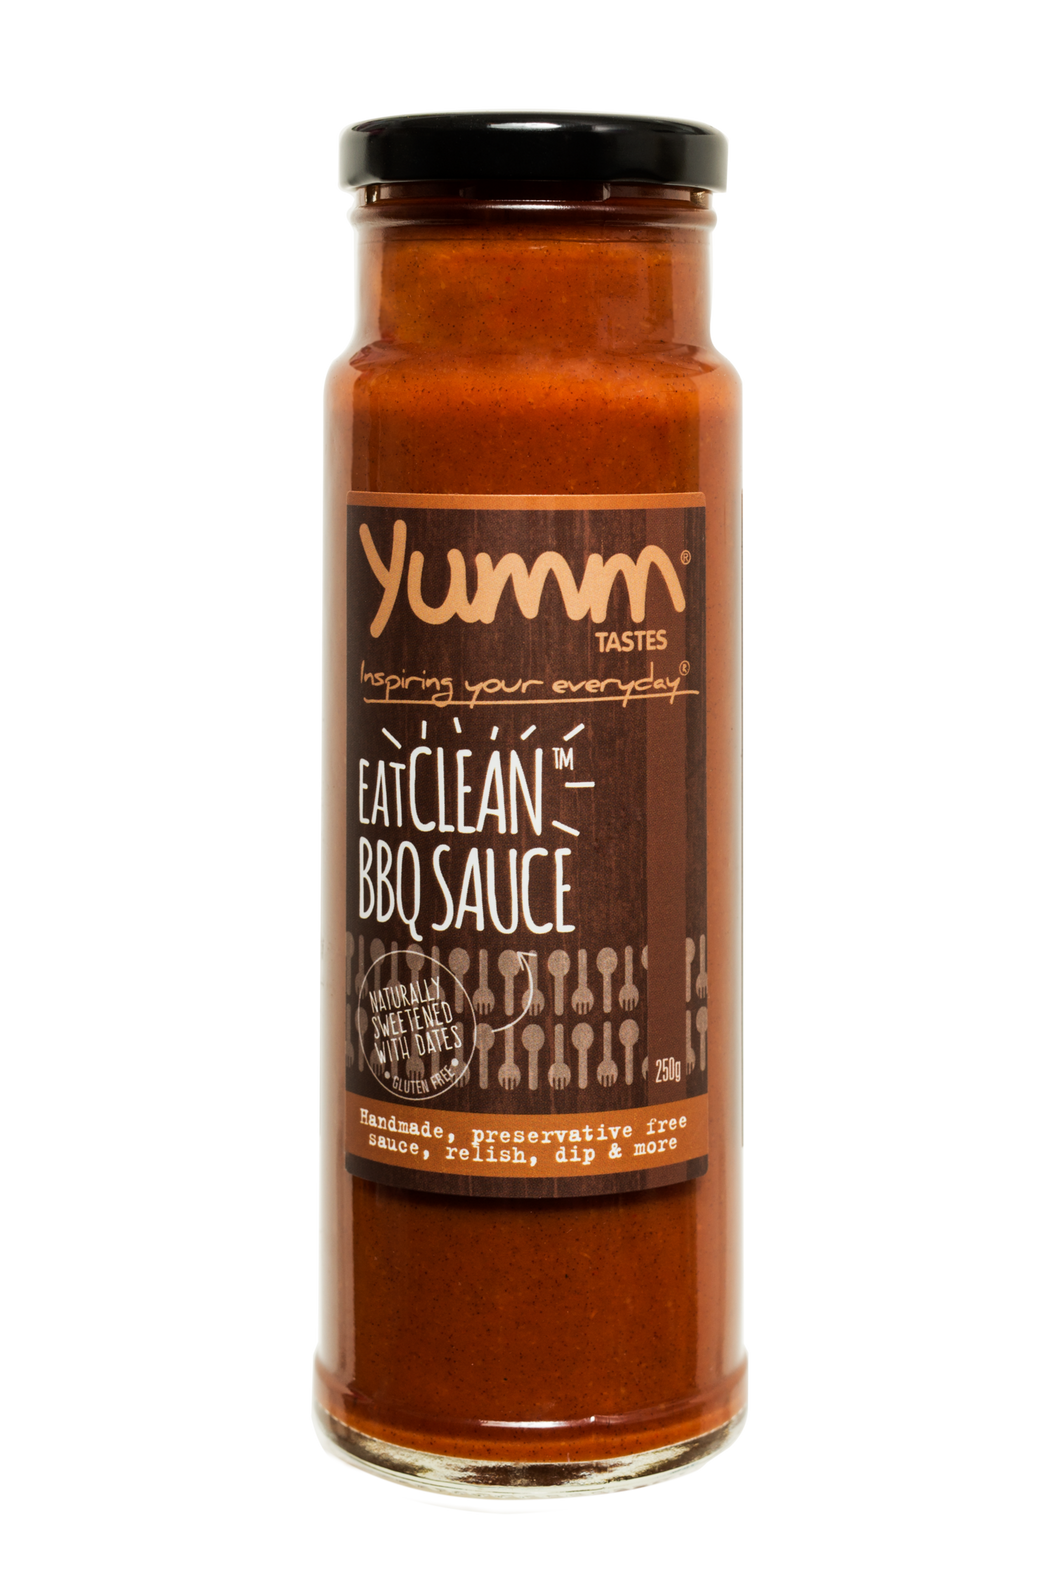 EatClean BBQ Sauce - yumm tastes